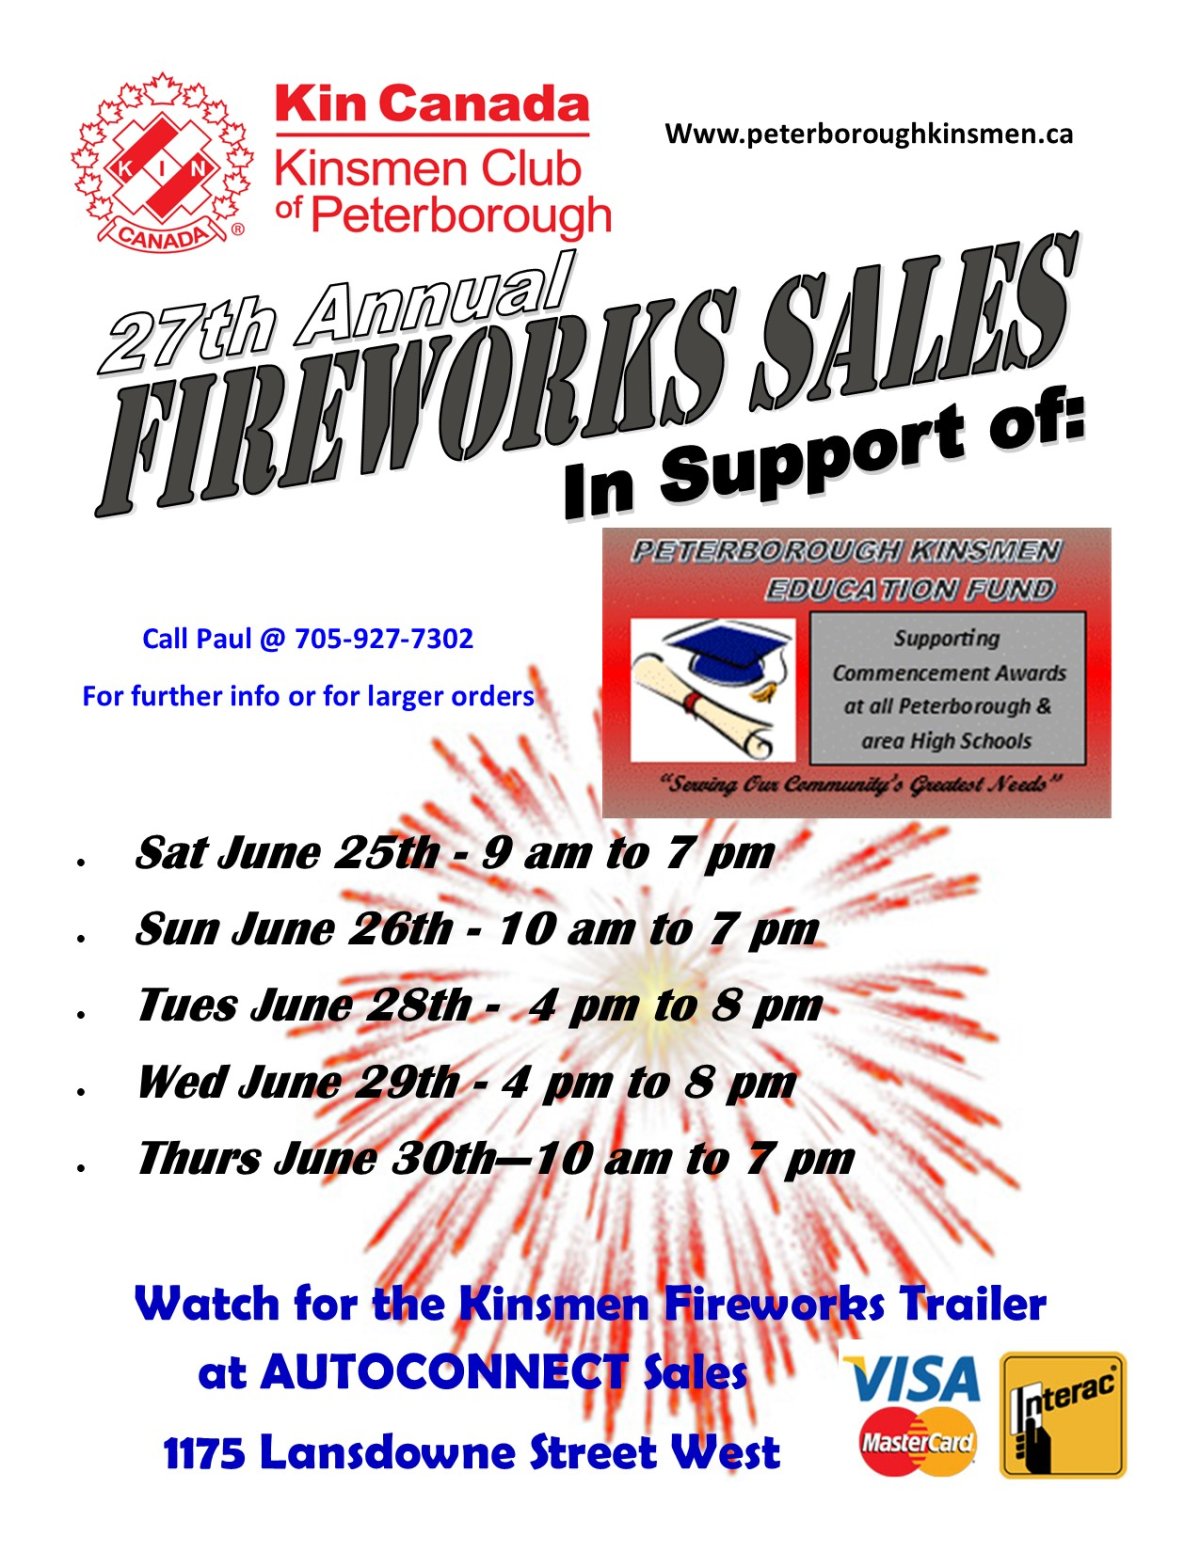 Kinsmen Fireworks sales - image